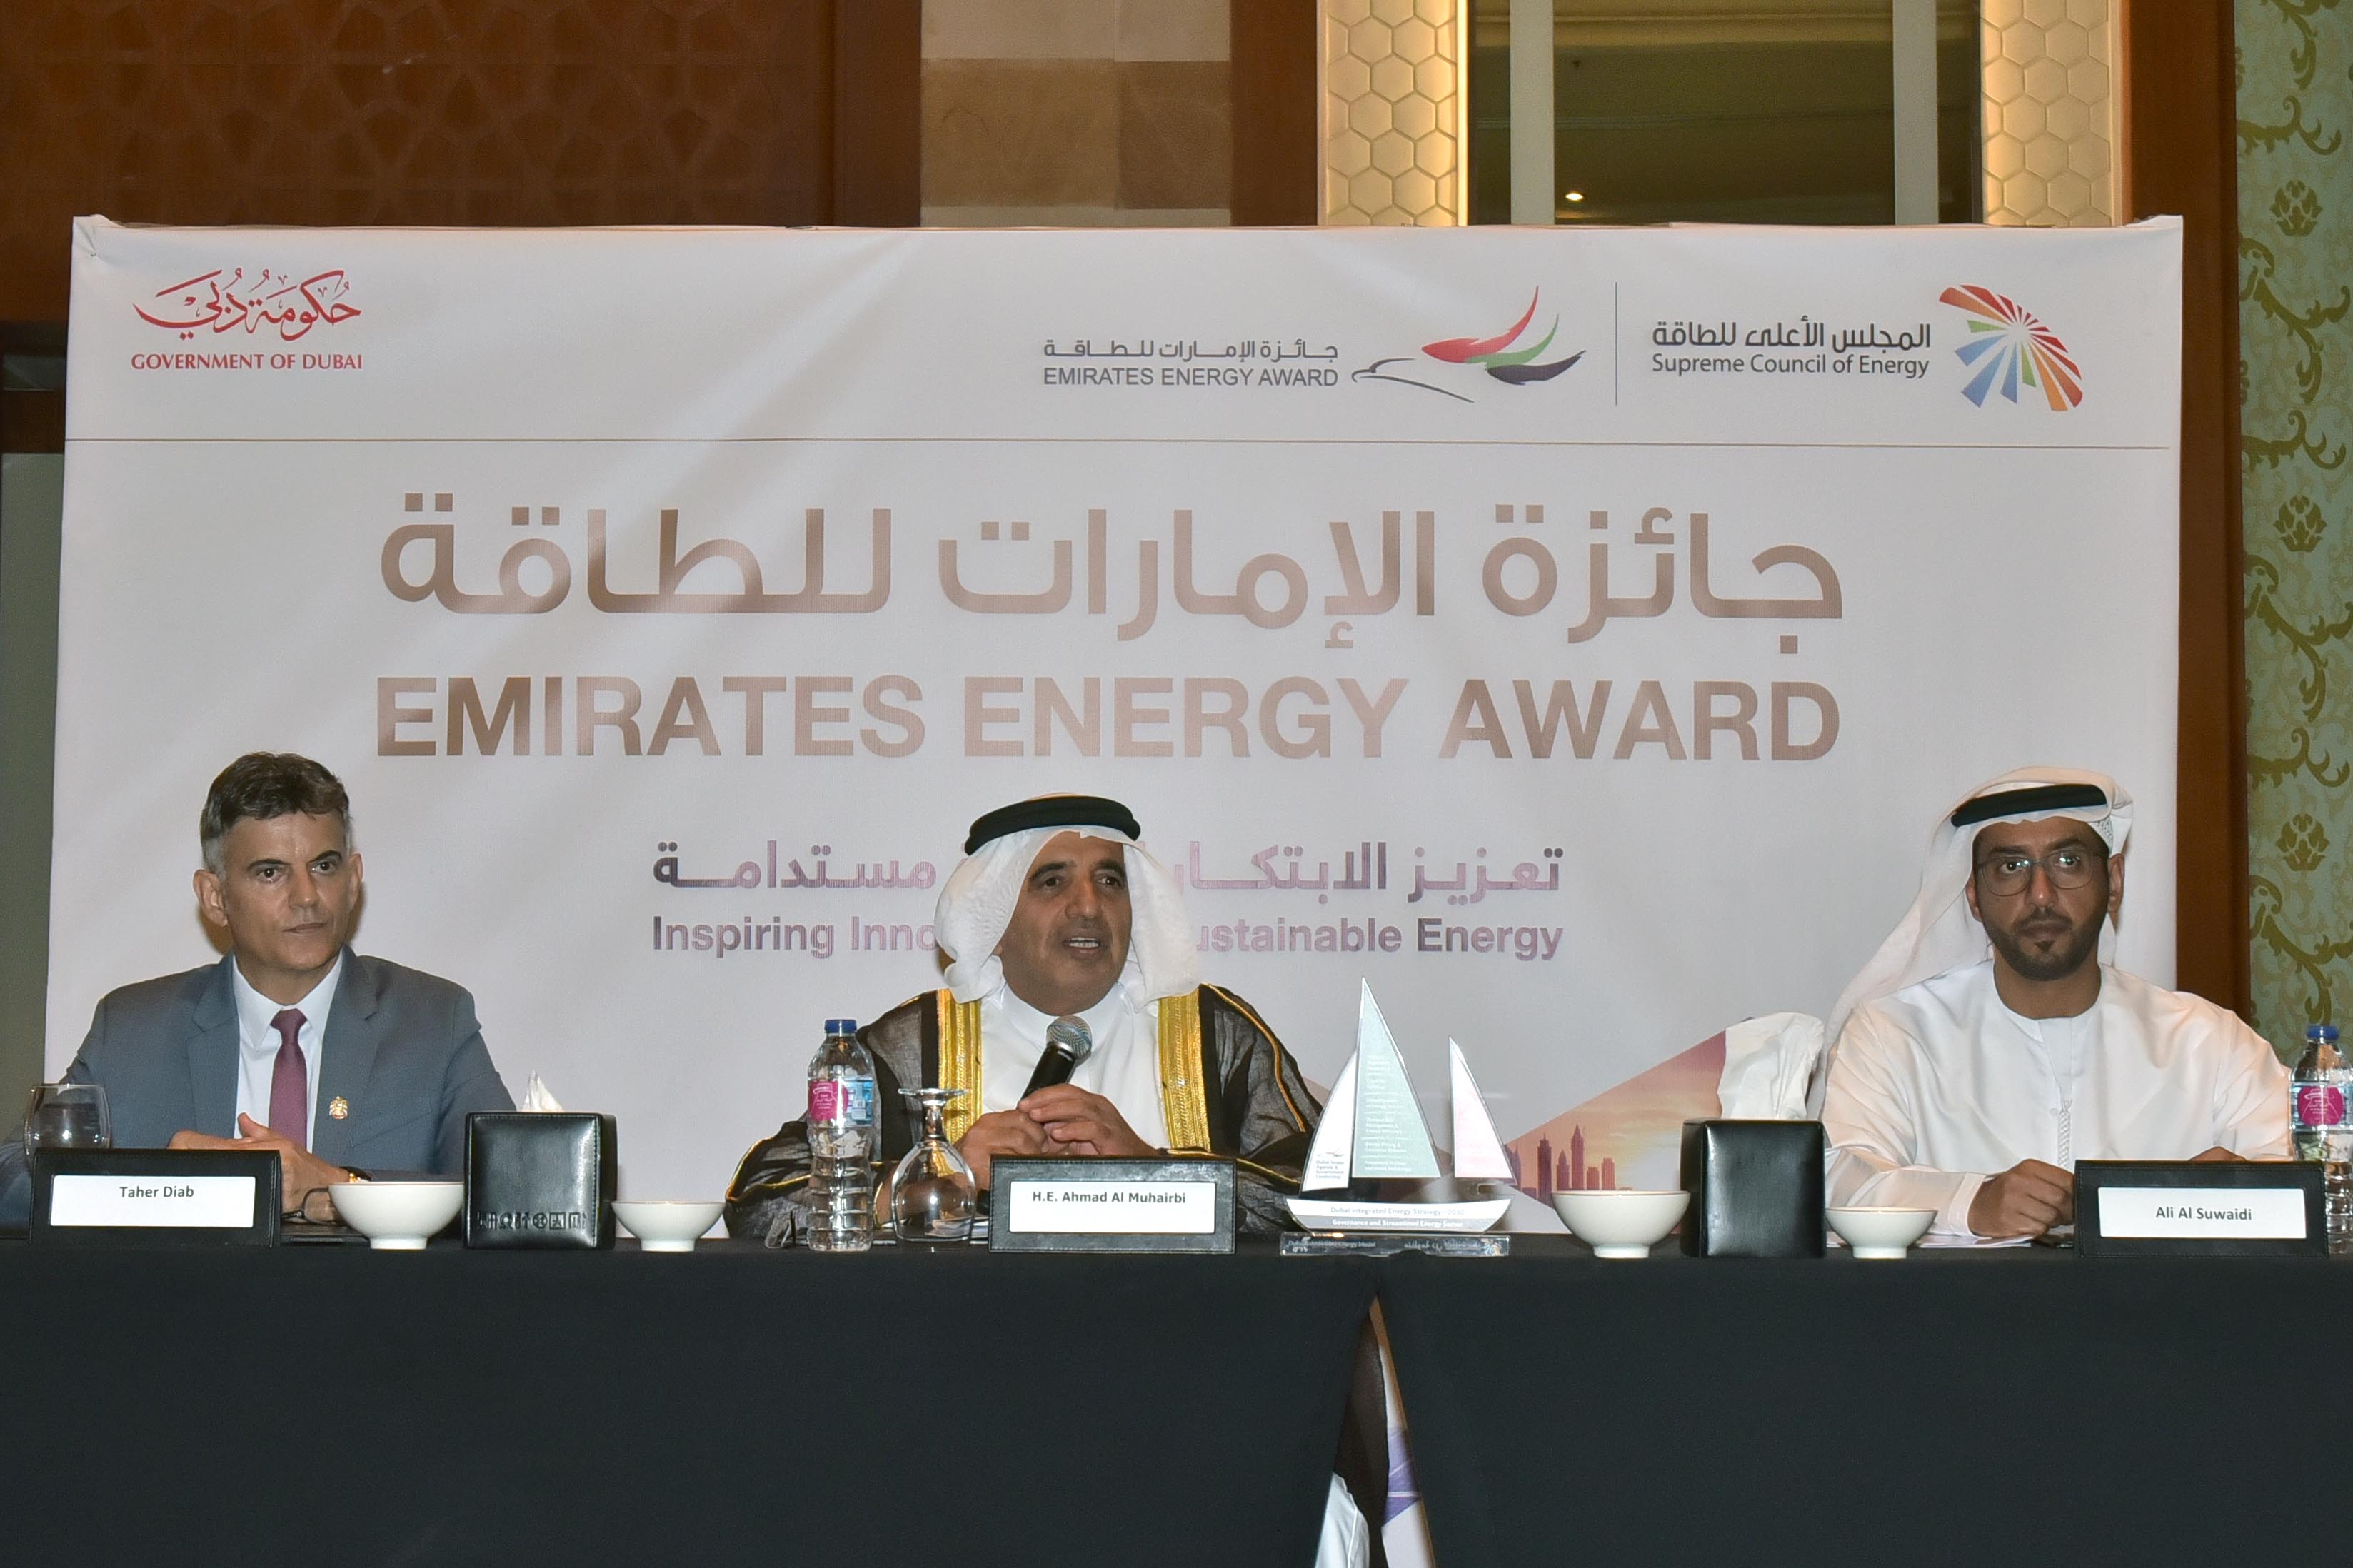 المجلس الأعلى للطاقة في دبي يُسلط الضوء على جائزة الامارات للطاقة 2020 في القاهرة